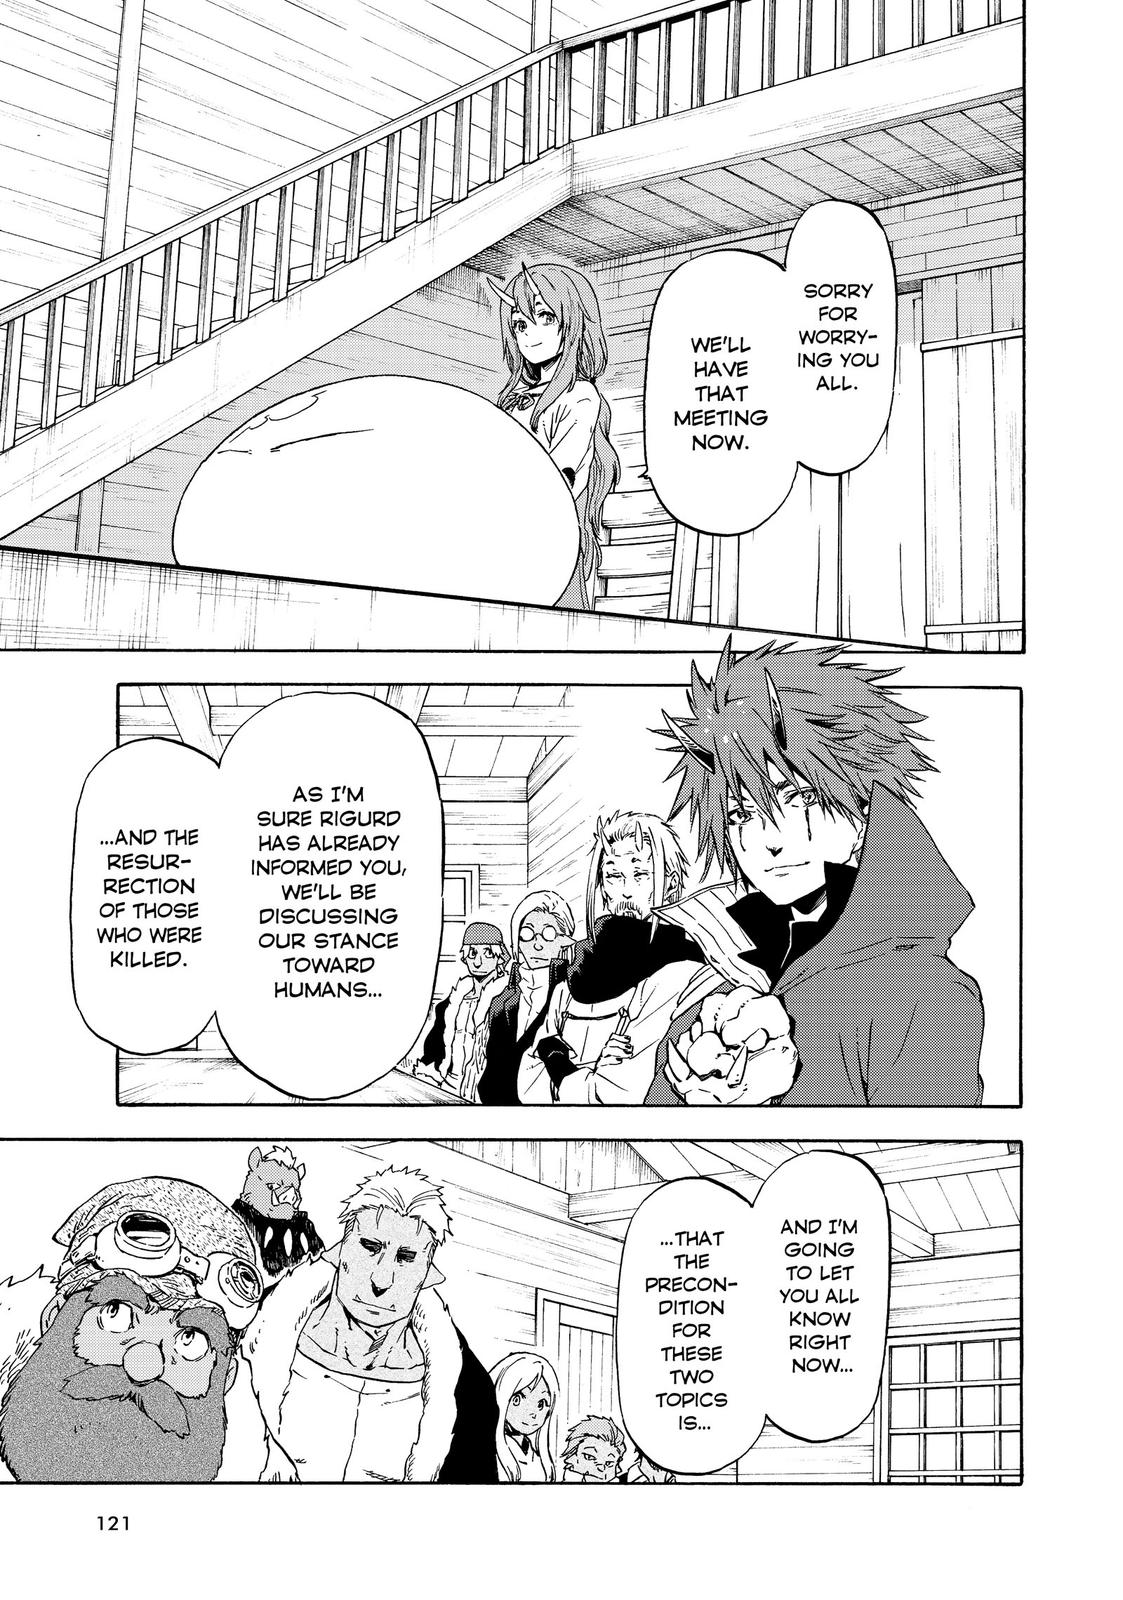 Manga tensei shitara slime datta ken season 2 chapter 88